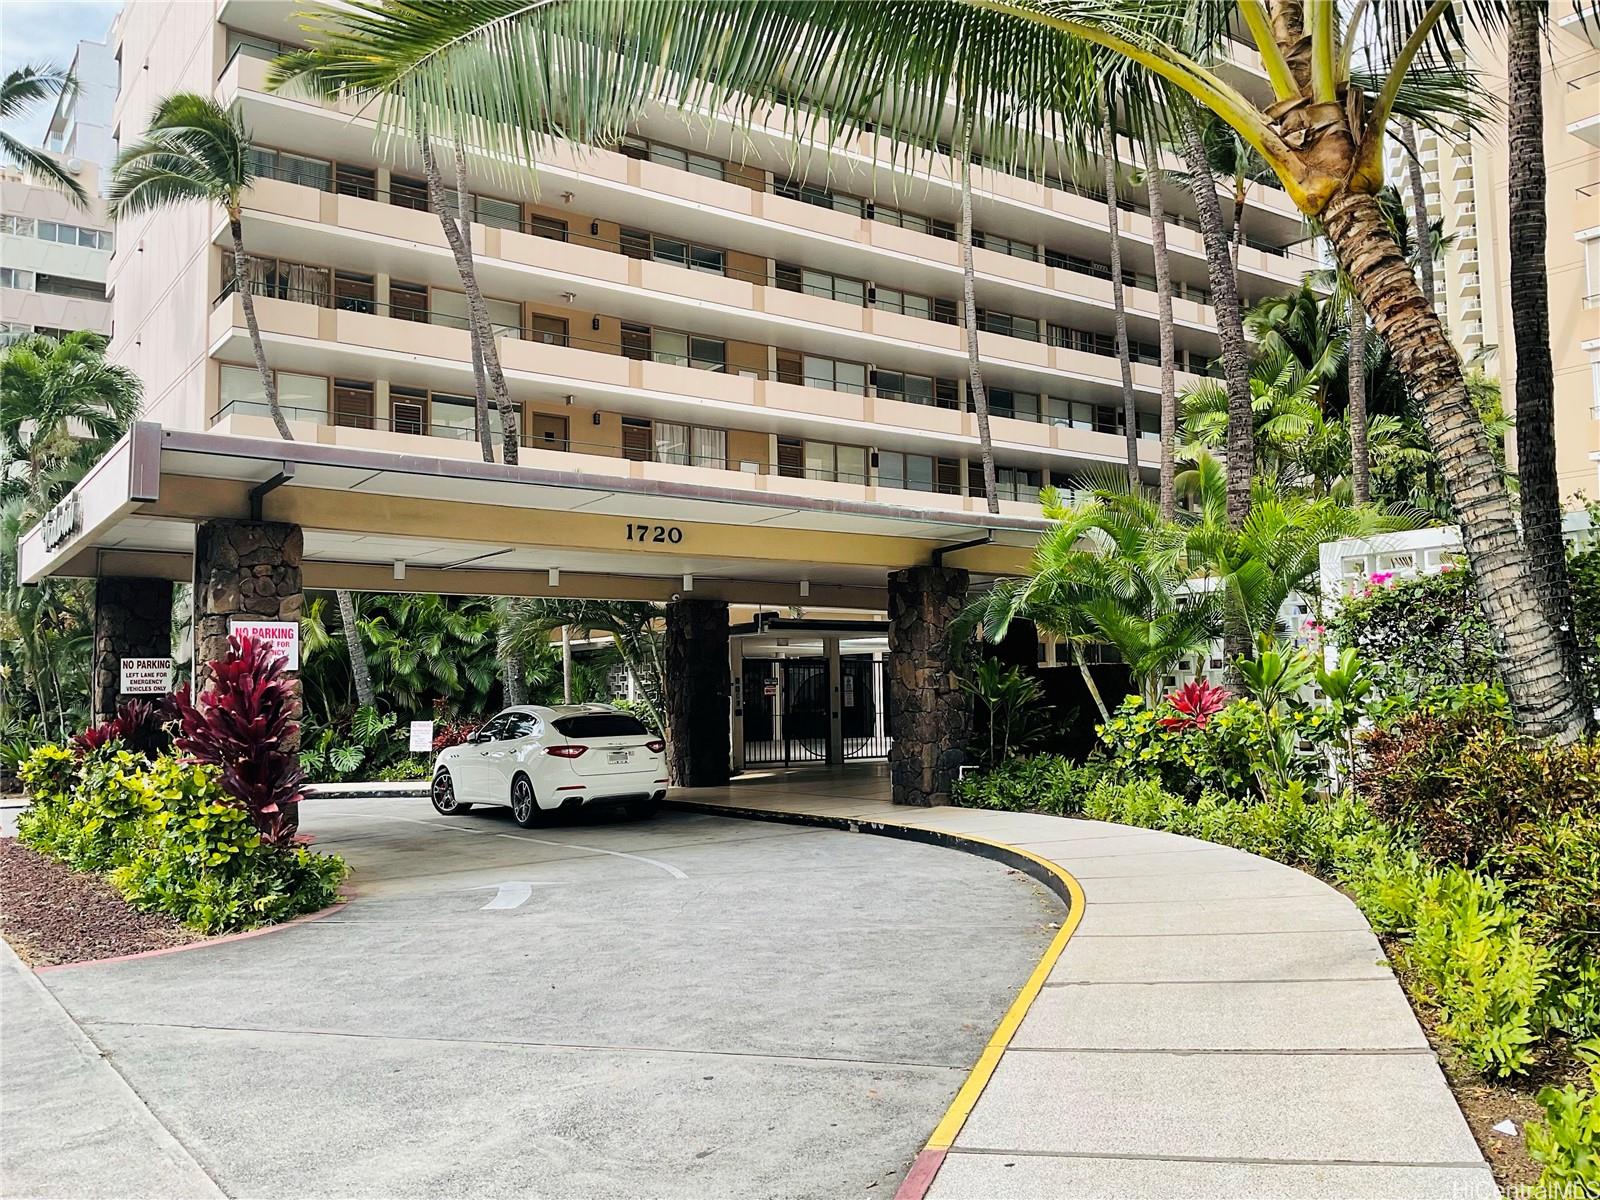 Tradewinds Hotel Inc condo # 201B, Honolulu, Hawaii - photo 2 of 16